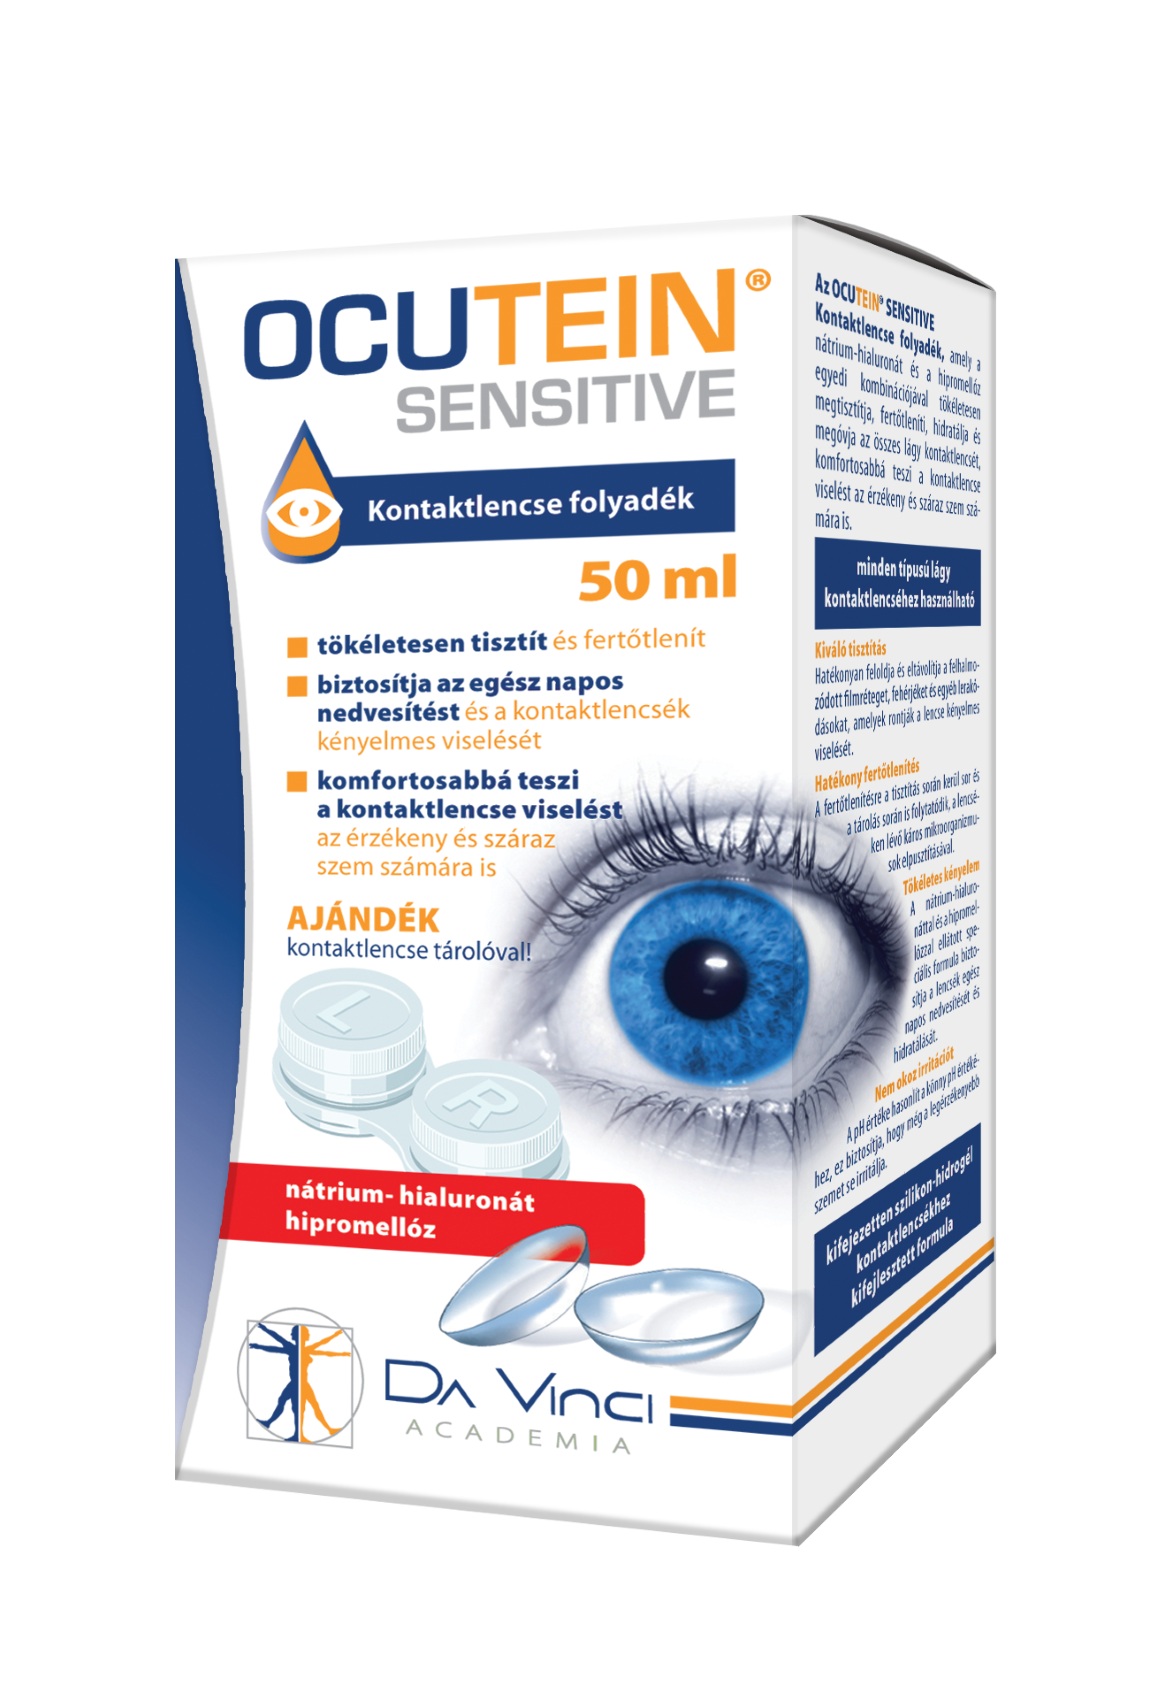 Ocutein Sensitive kontaktlencse folyadék 